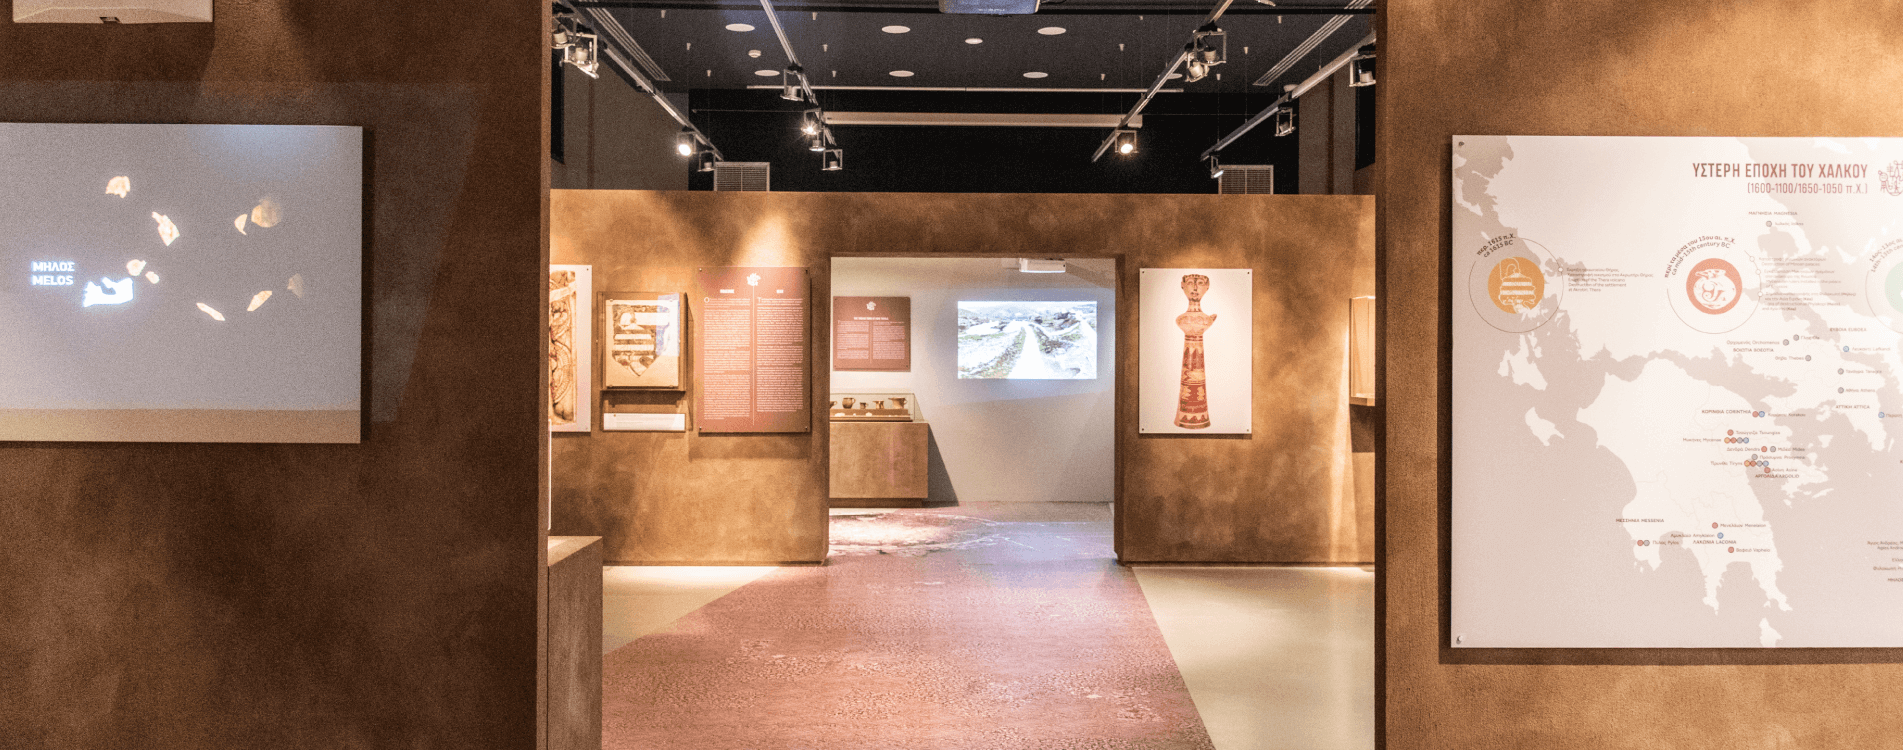 Μυκηναϊκός Πολιτισμός & Μουσείο Μαρμαροτεχνίας Τήνου | Τράπεζα Πειραιώς Blog